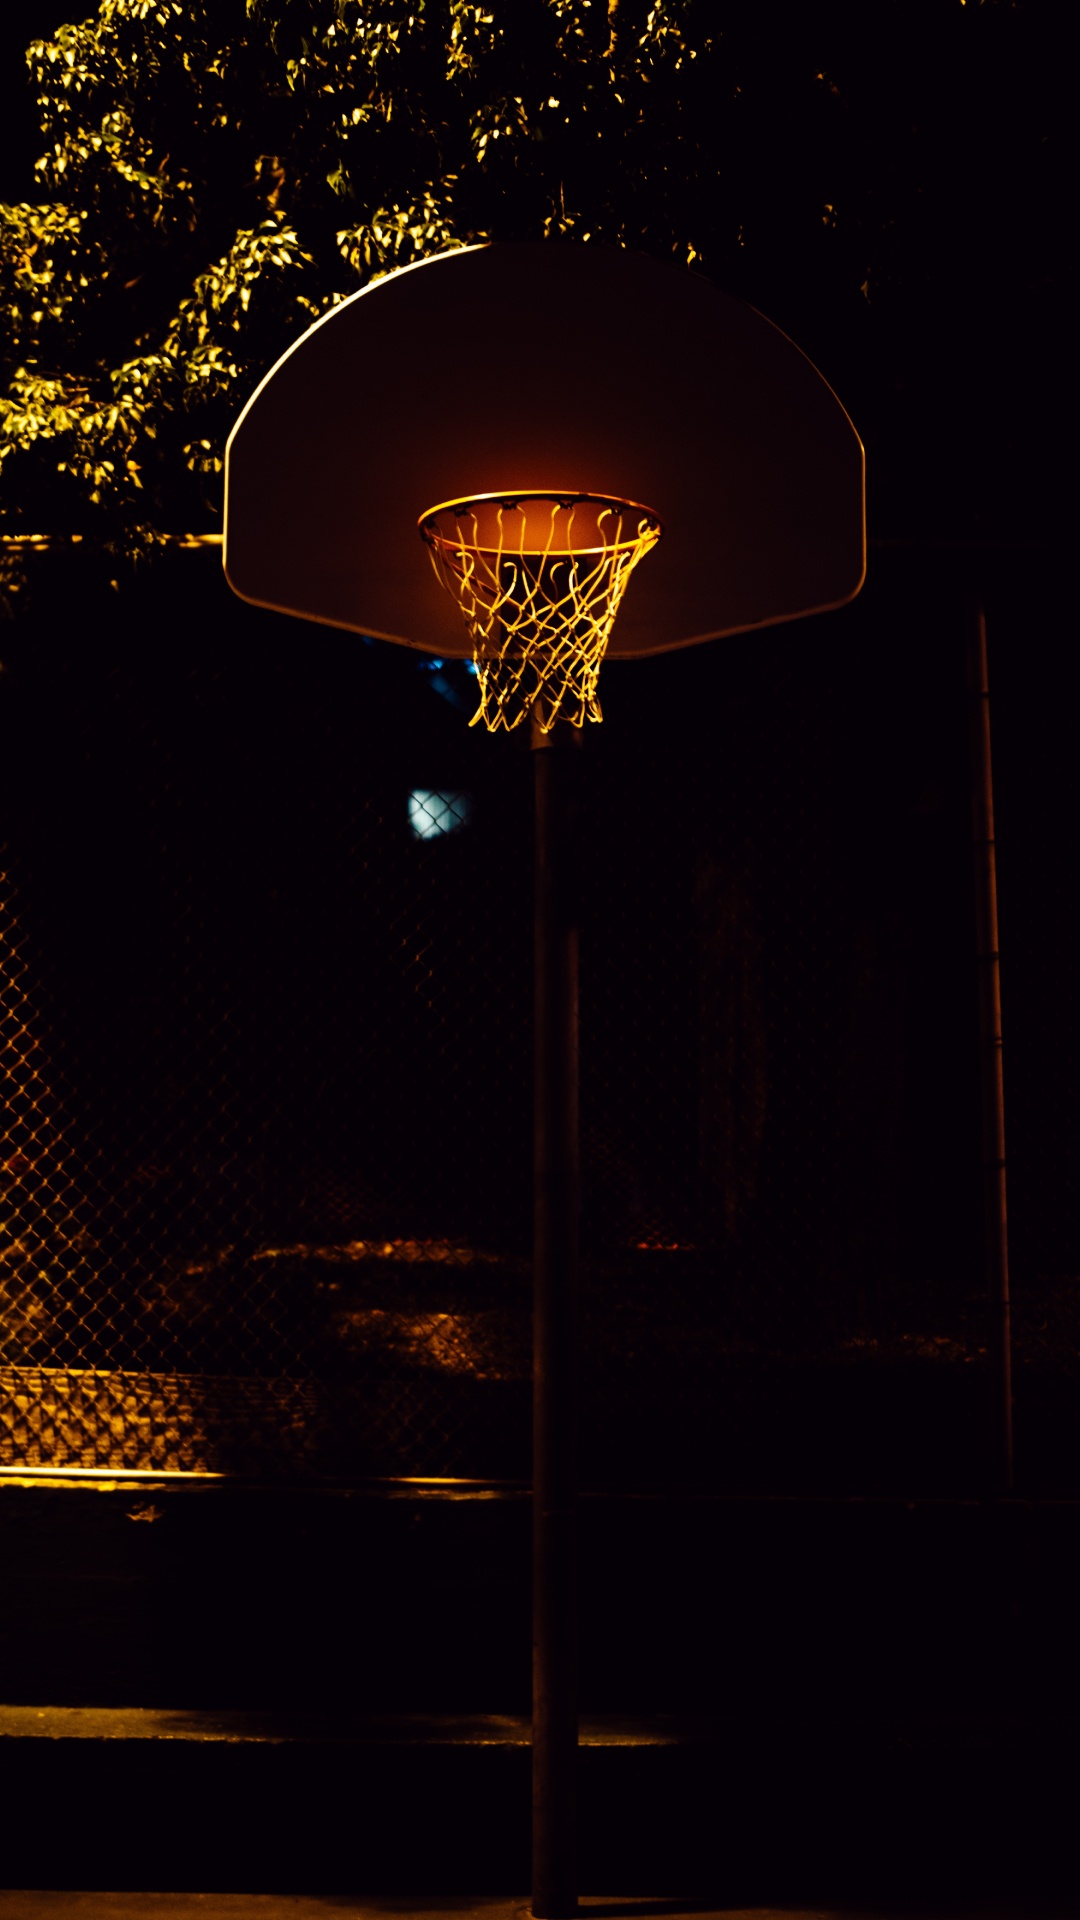 Basketballkorb Mit Nachts Eingeschaltetem Licht. Wallpaper in 1080x1920 Resolution